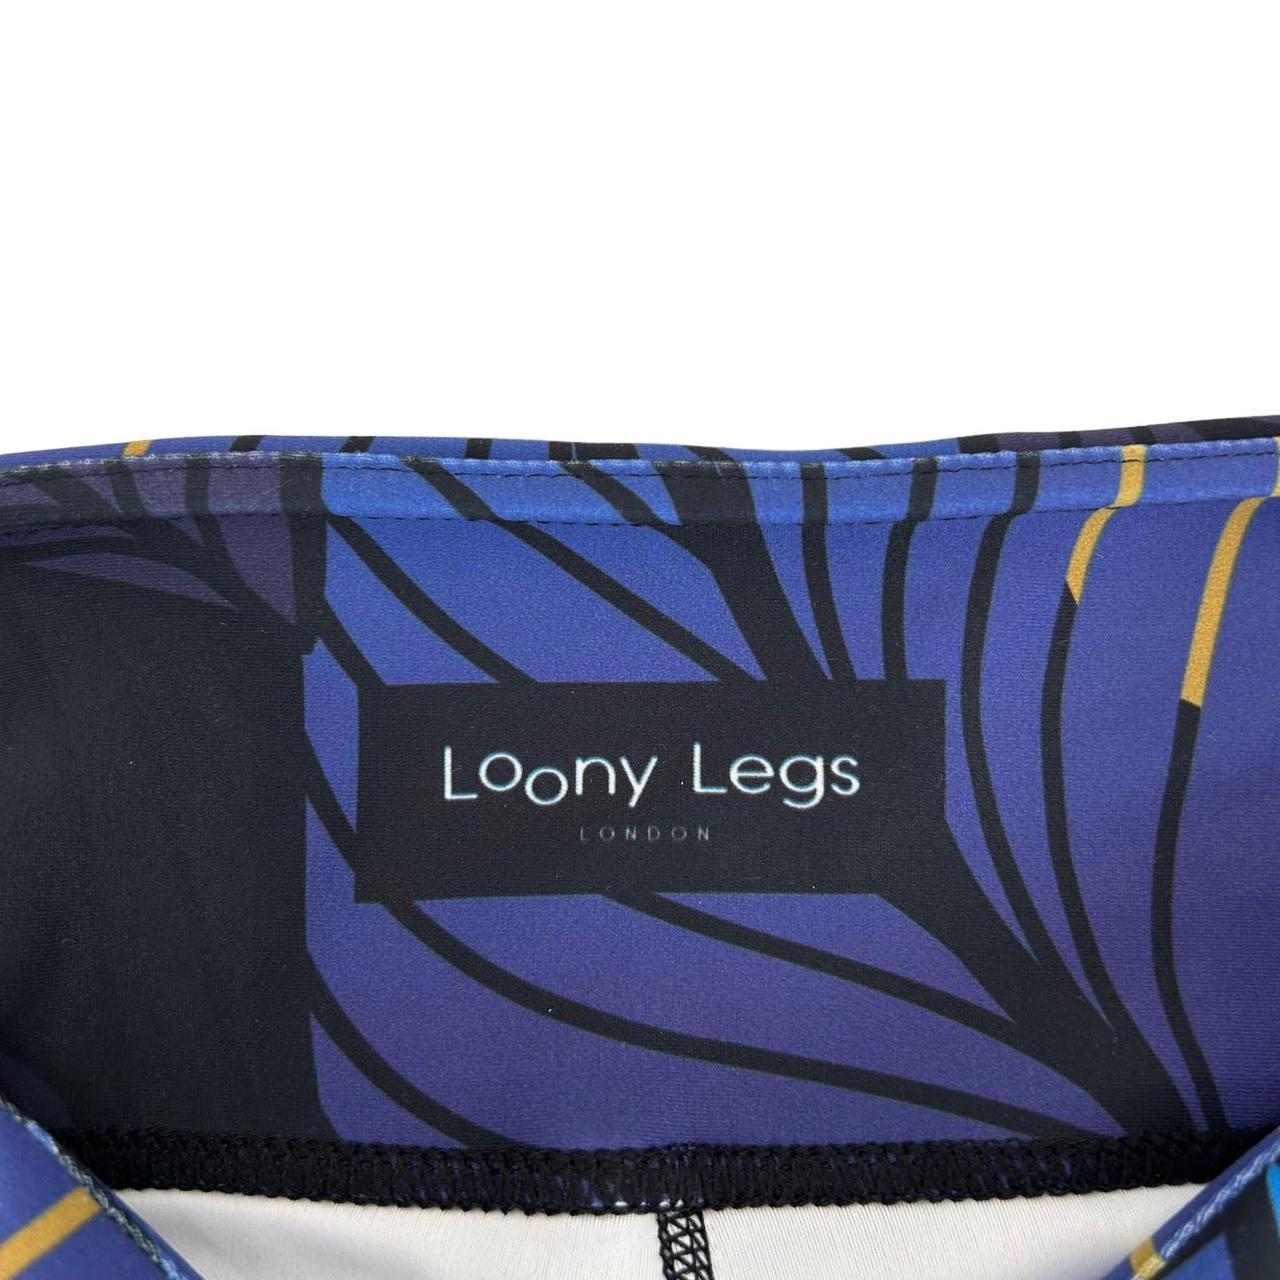 Loony Legs London Floral Fireflies Blue Yellow - Depop